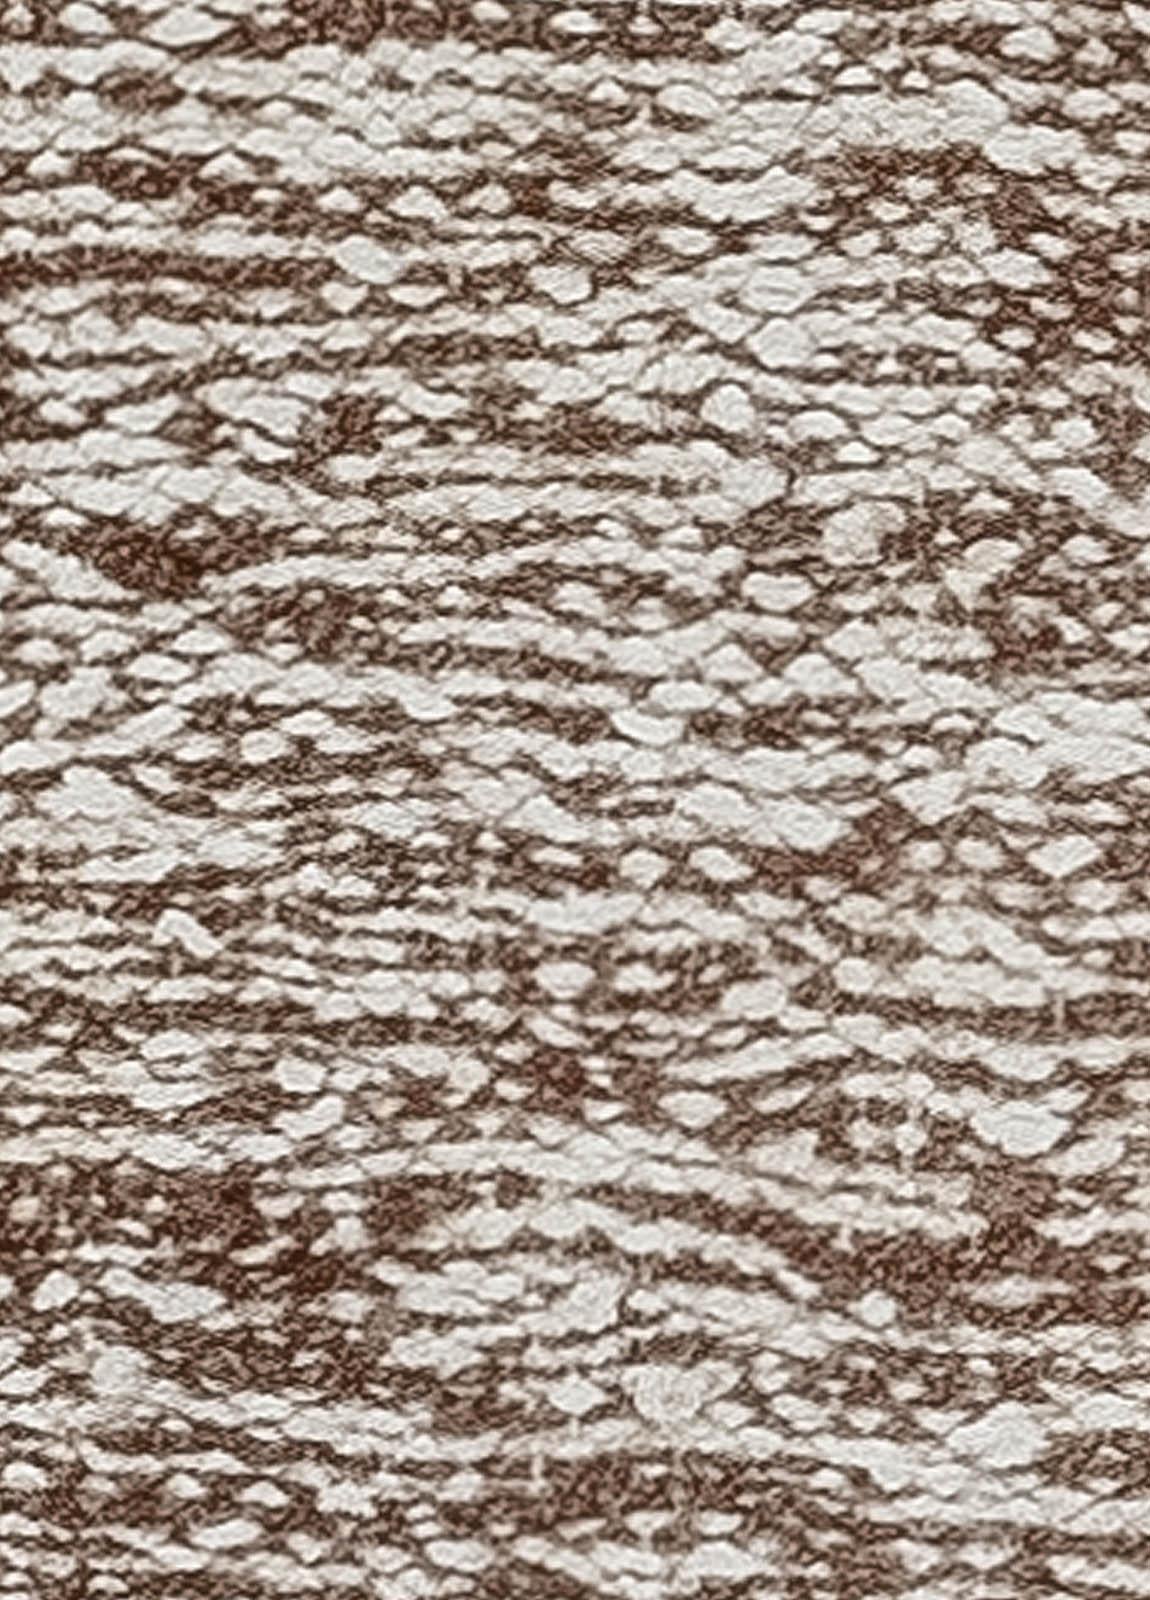 Modern Beige and Brown Flat Weave Wool Runner by Doris Leslie Blau
Size: 1'8